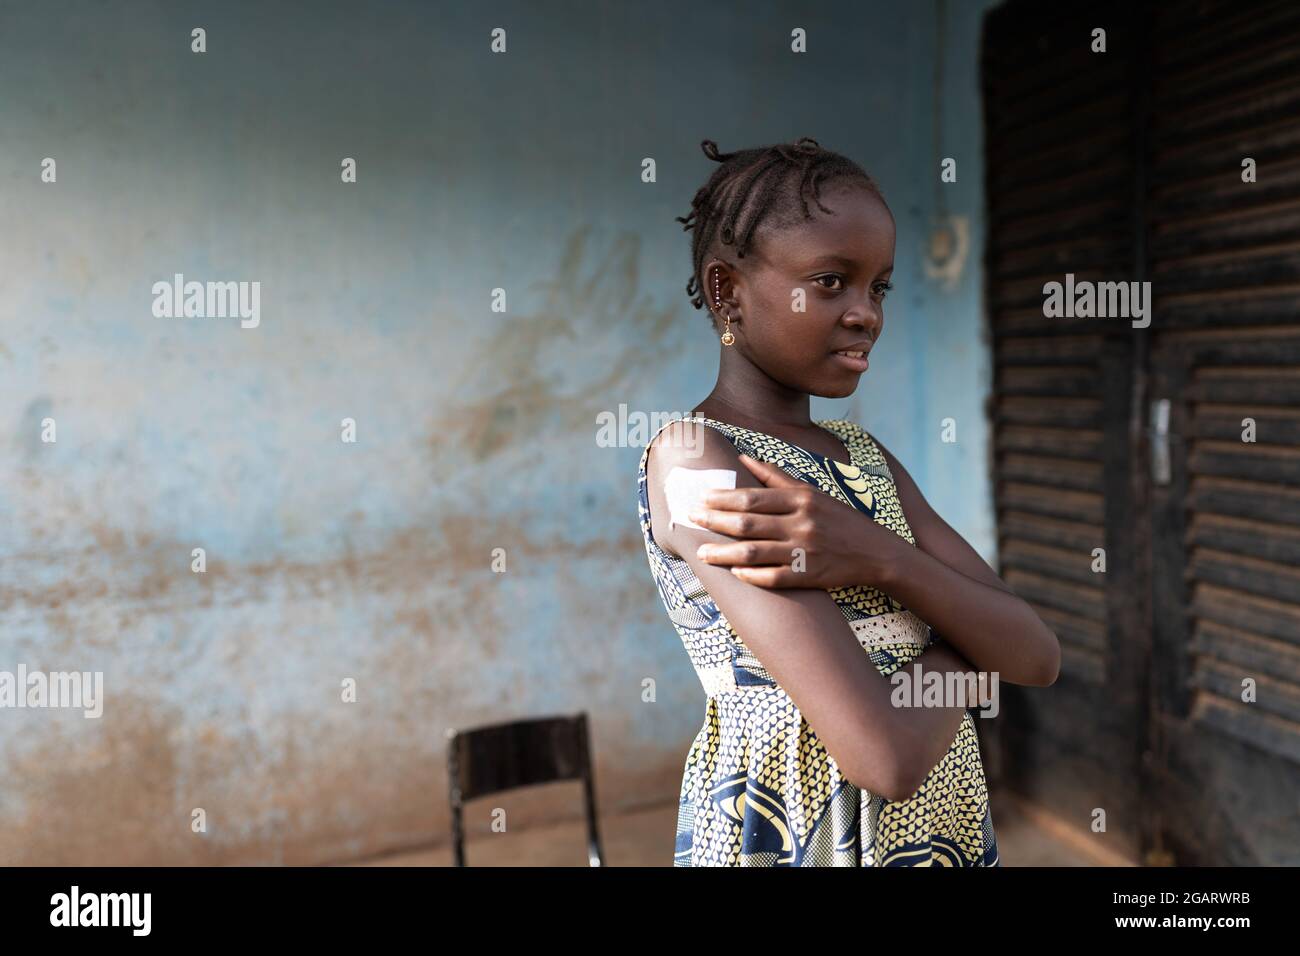 Auf diesem Bild drückt ein lächelndes, kleines afrikanisches Mädchen mit einem erleichterten Gesichtsausdruck ein saugfähiges Wattestäbchen auf die Injekton-Stelle Stockfoto